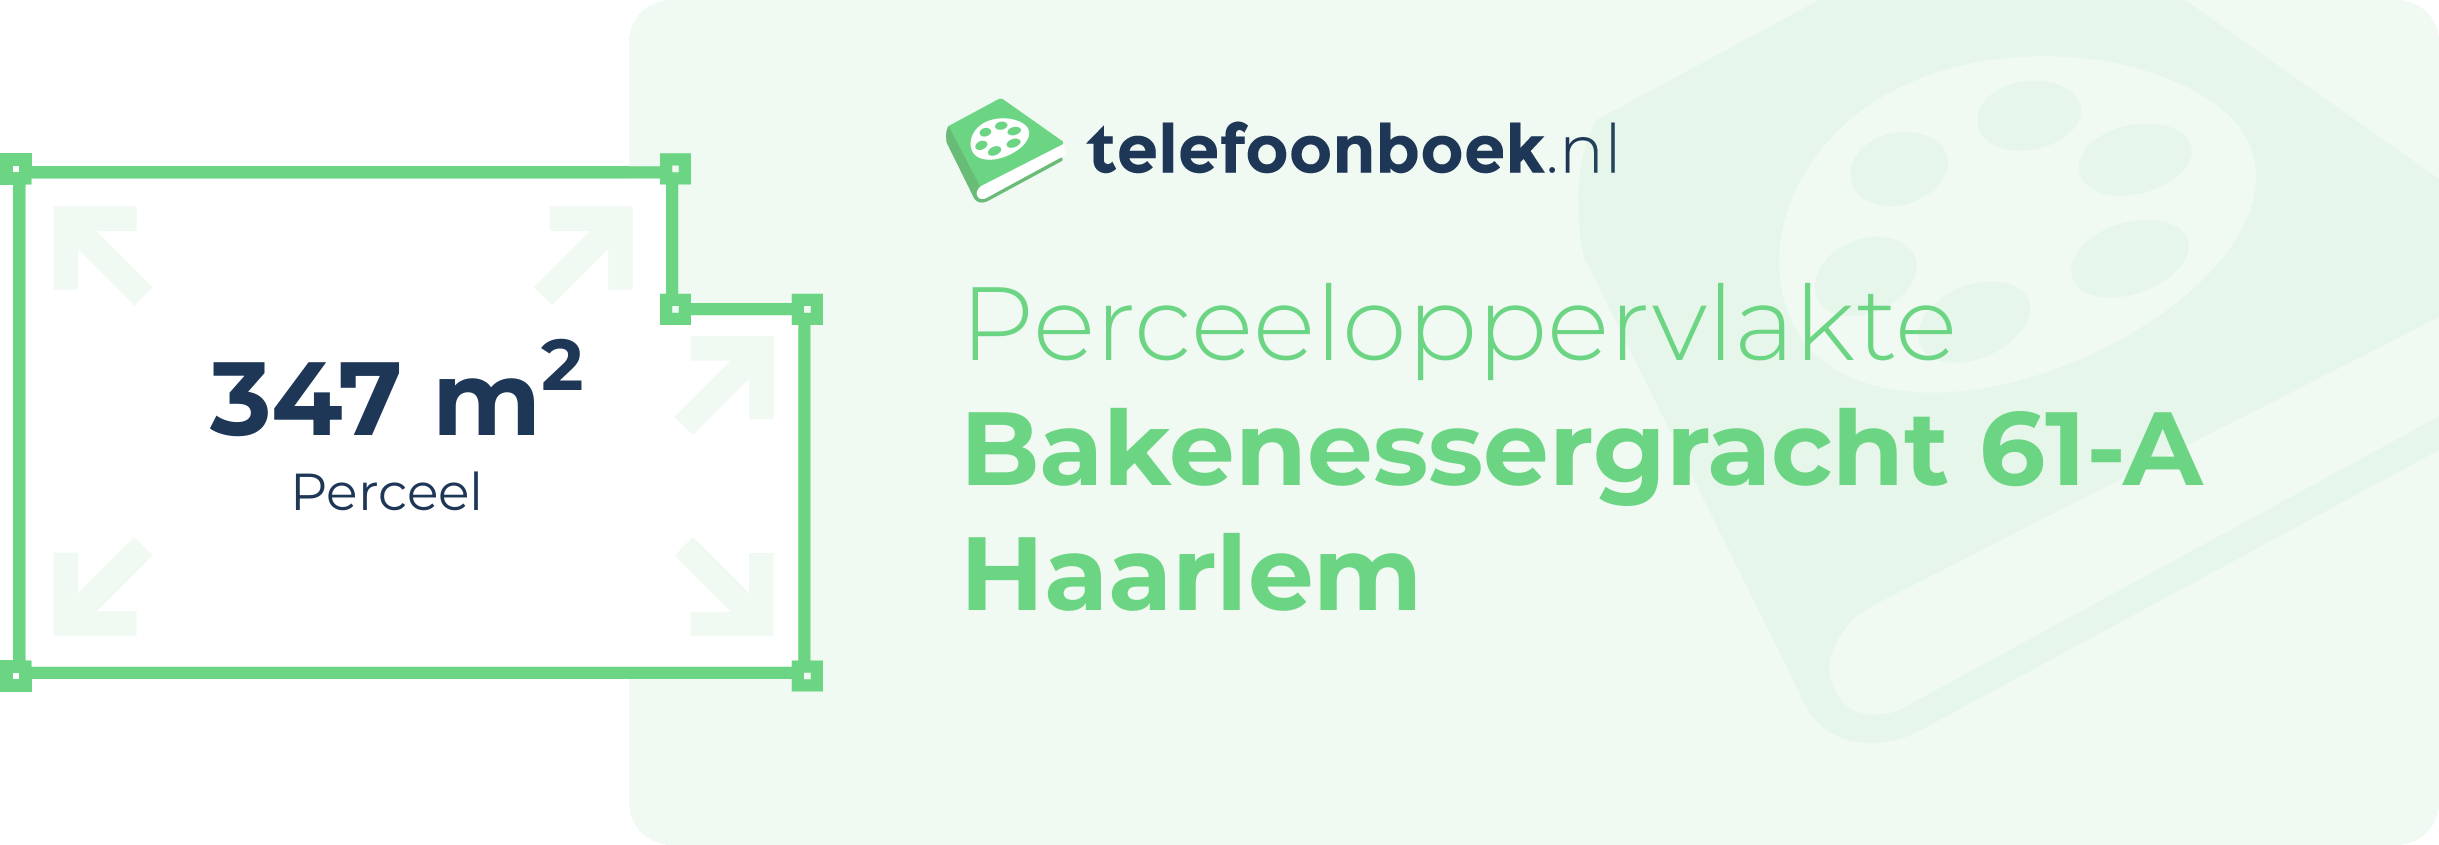 Perceeloppervlakte Bakenessergracht 61-A Haarlem